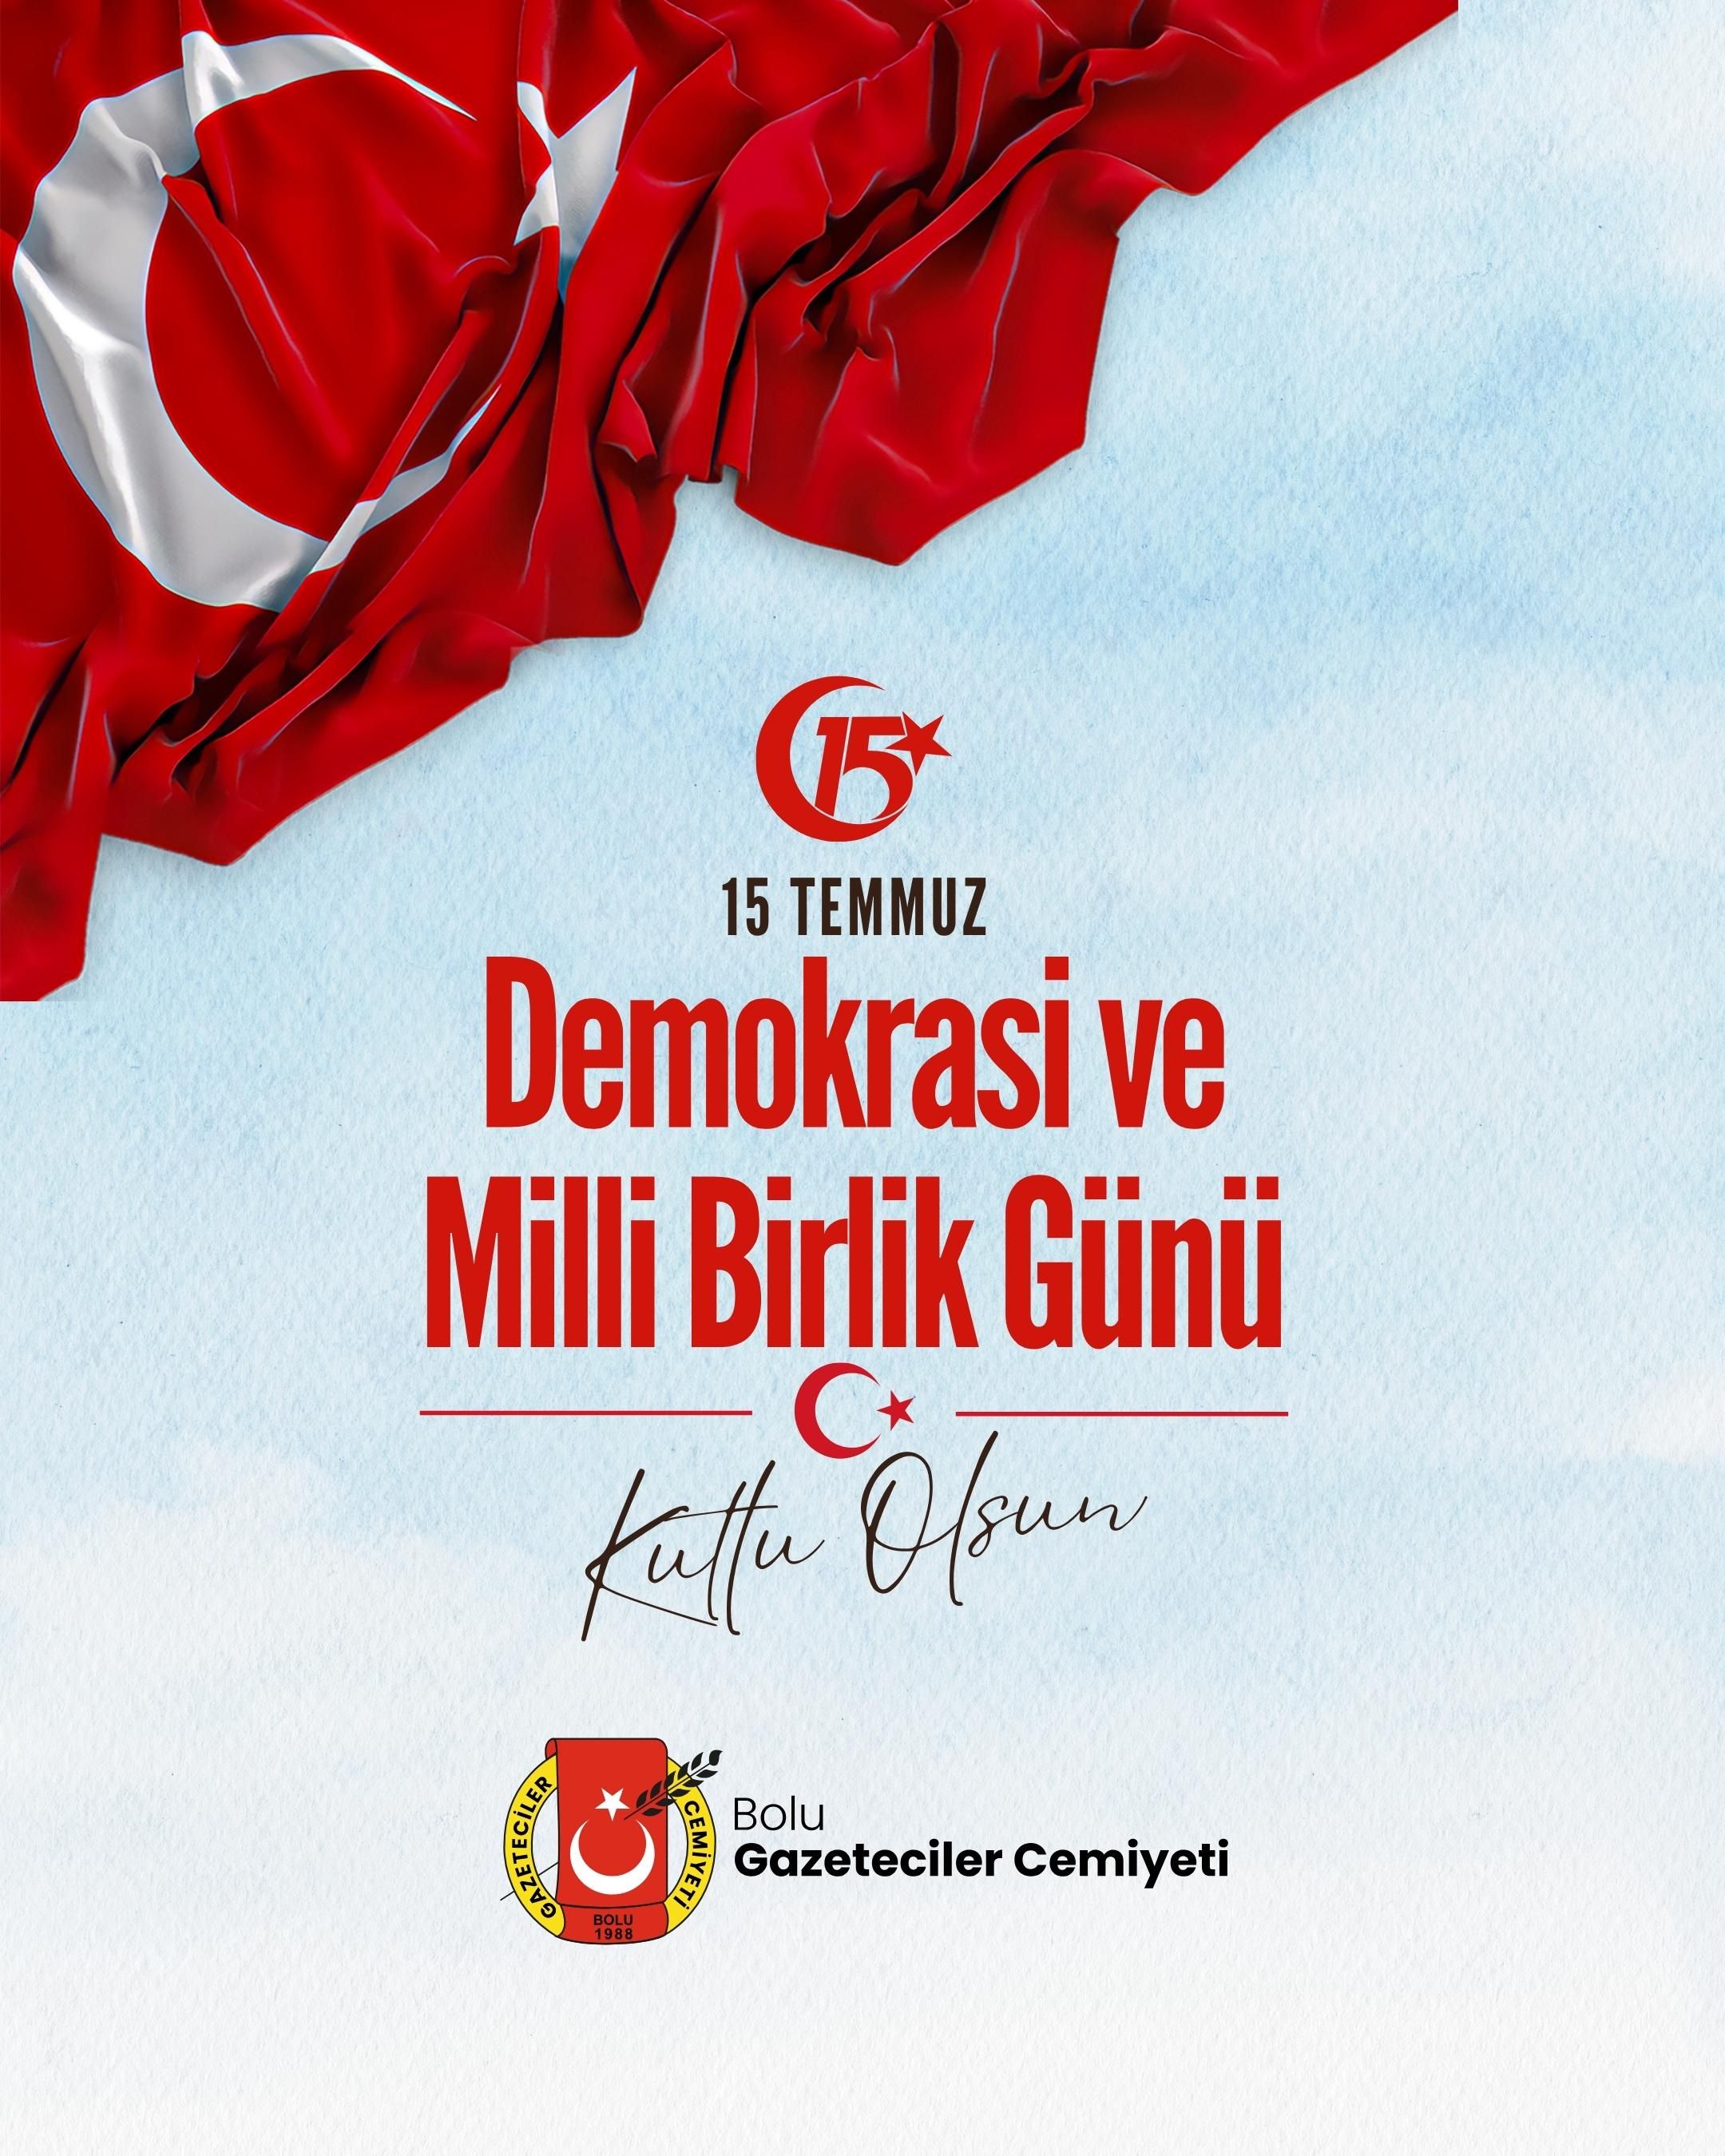 Büyük Türk Milleti'nin vatan sevgisini tüm dünyaya bir kez daha gösterdiği tarihin adıdır 15 Temmuz...
